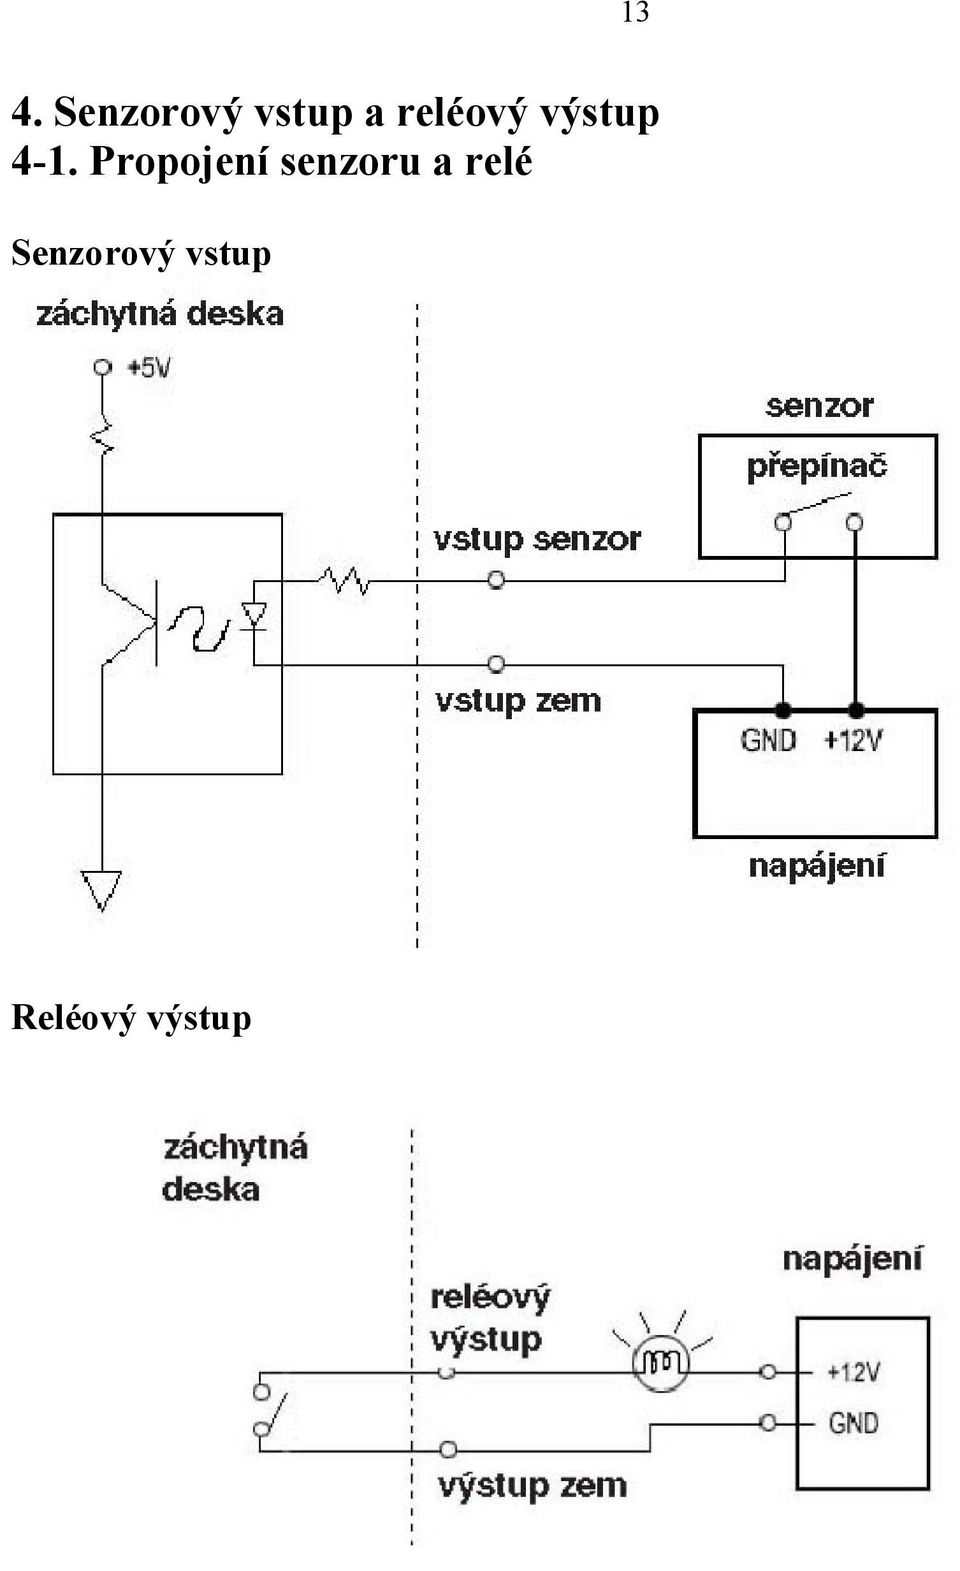 Propojení senzoru a relé